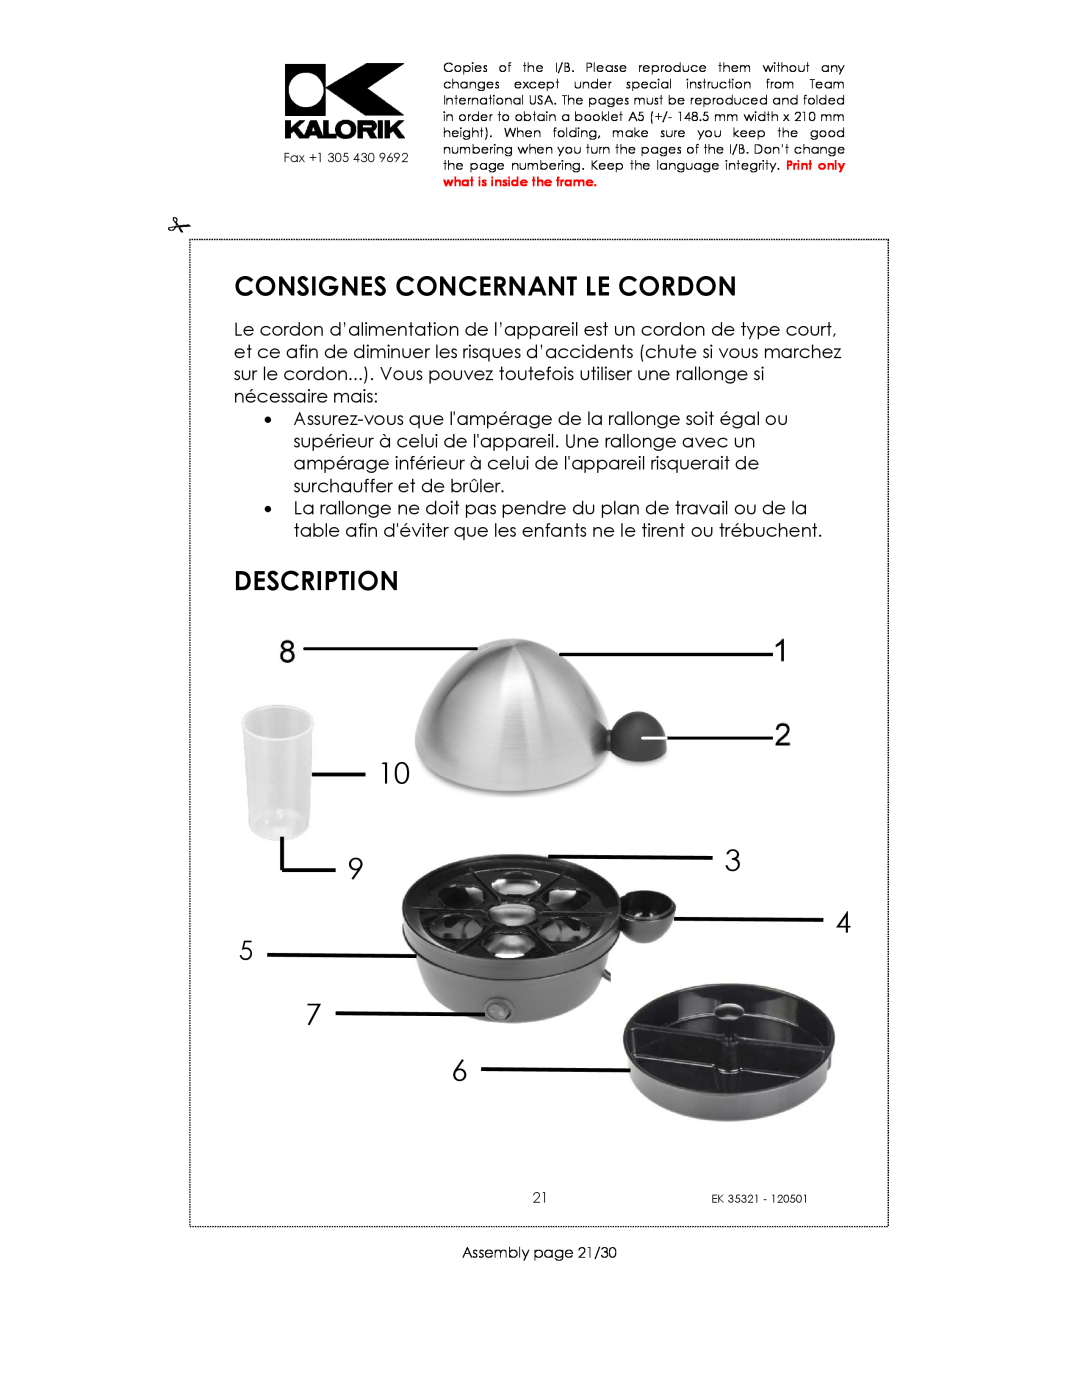 Kalorik EK35321 manual Consignes Concernant Le Cordon, Description, Assembly page 21/30 